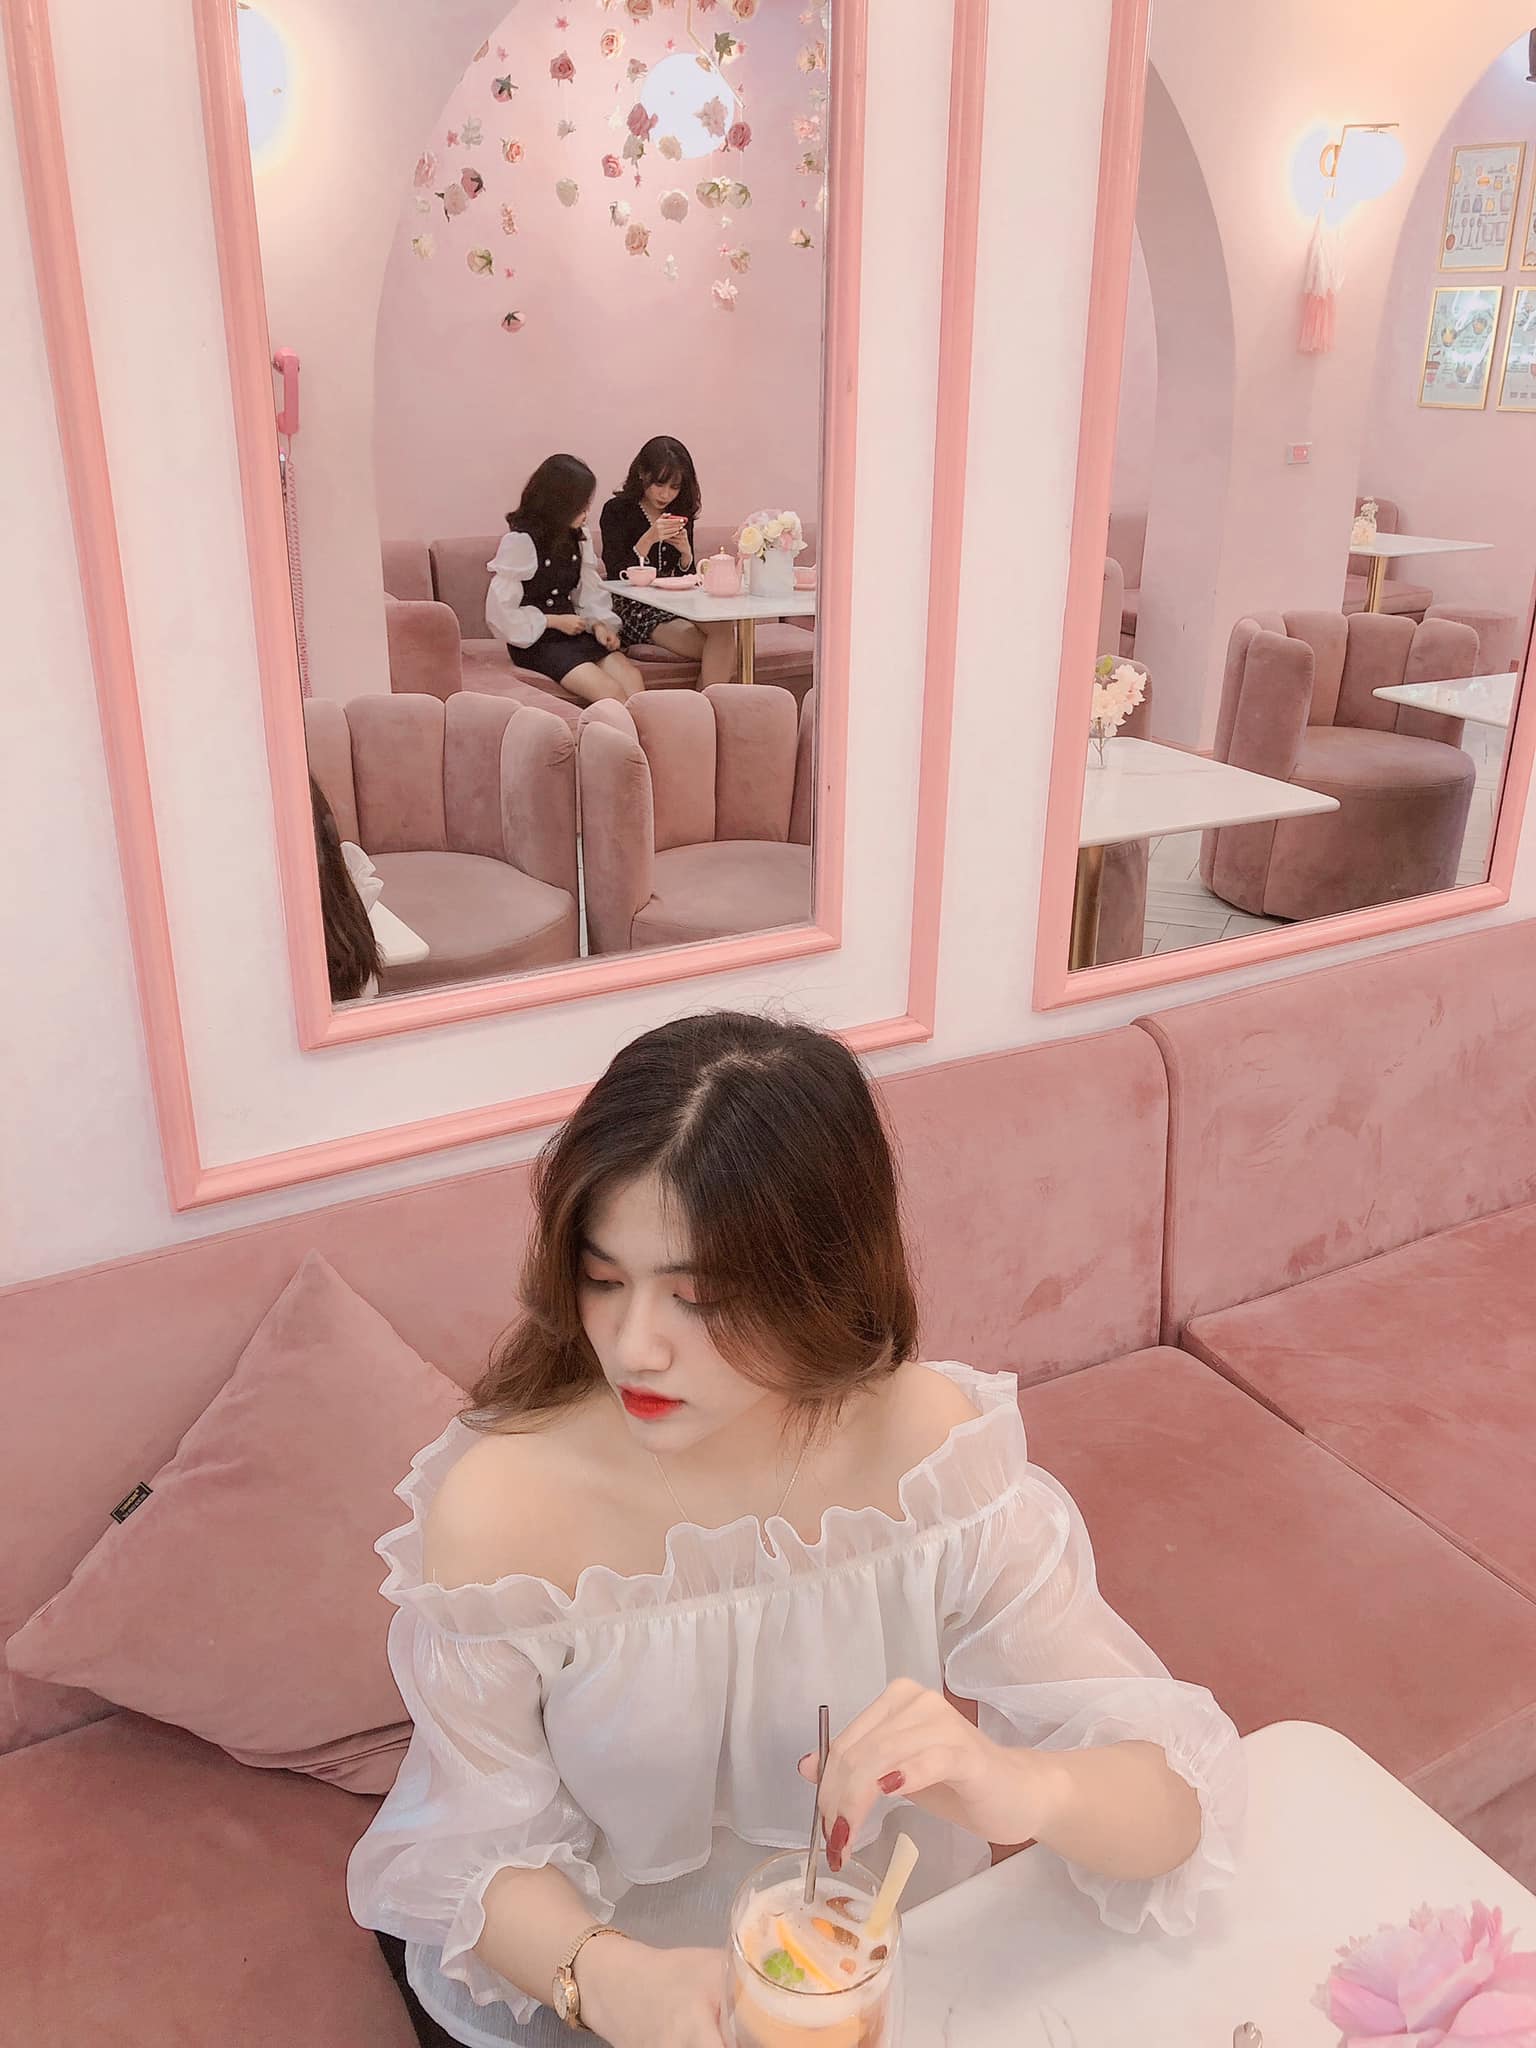 quán cafe tone hồng bánh bèo